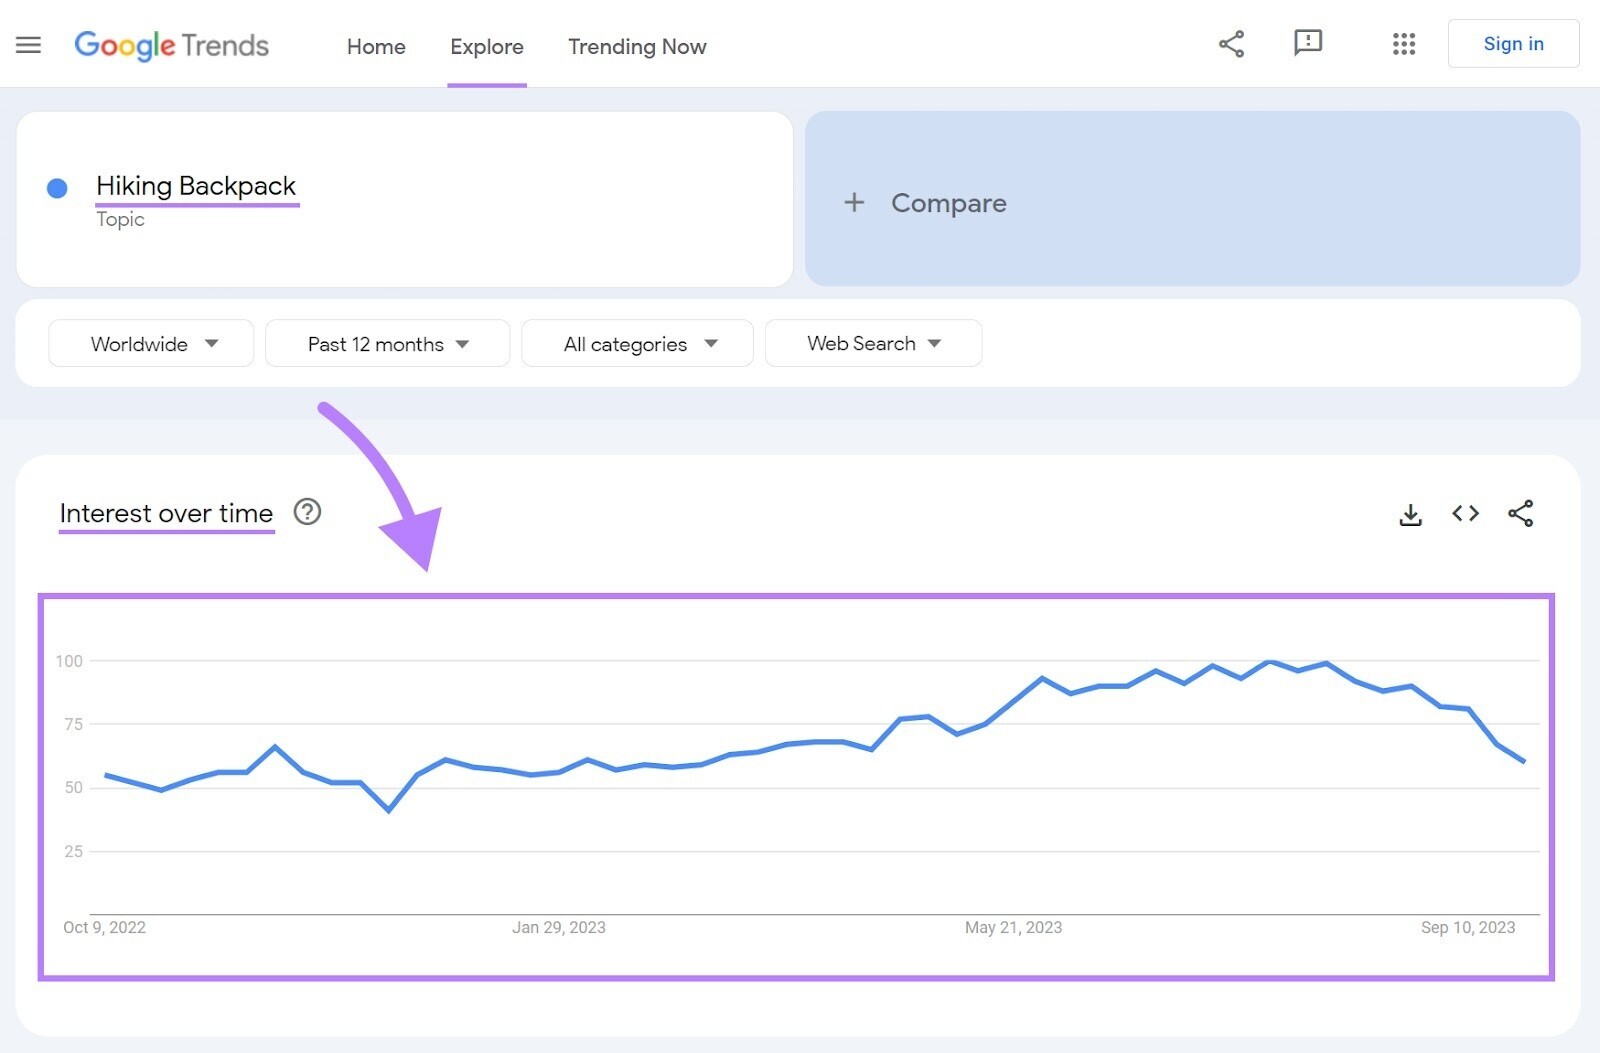 Graphique d'intérêt de Google Trends au fil du temps montrant les résultats pour le sac à dos de randonnée